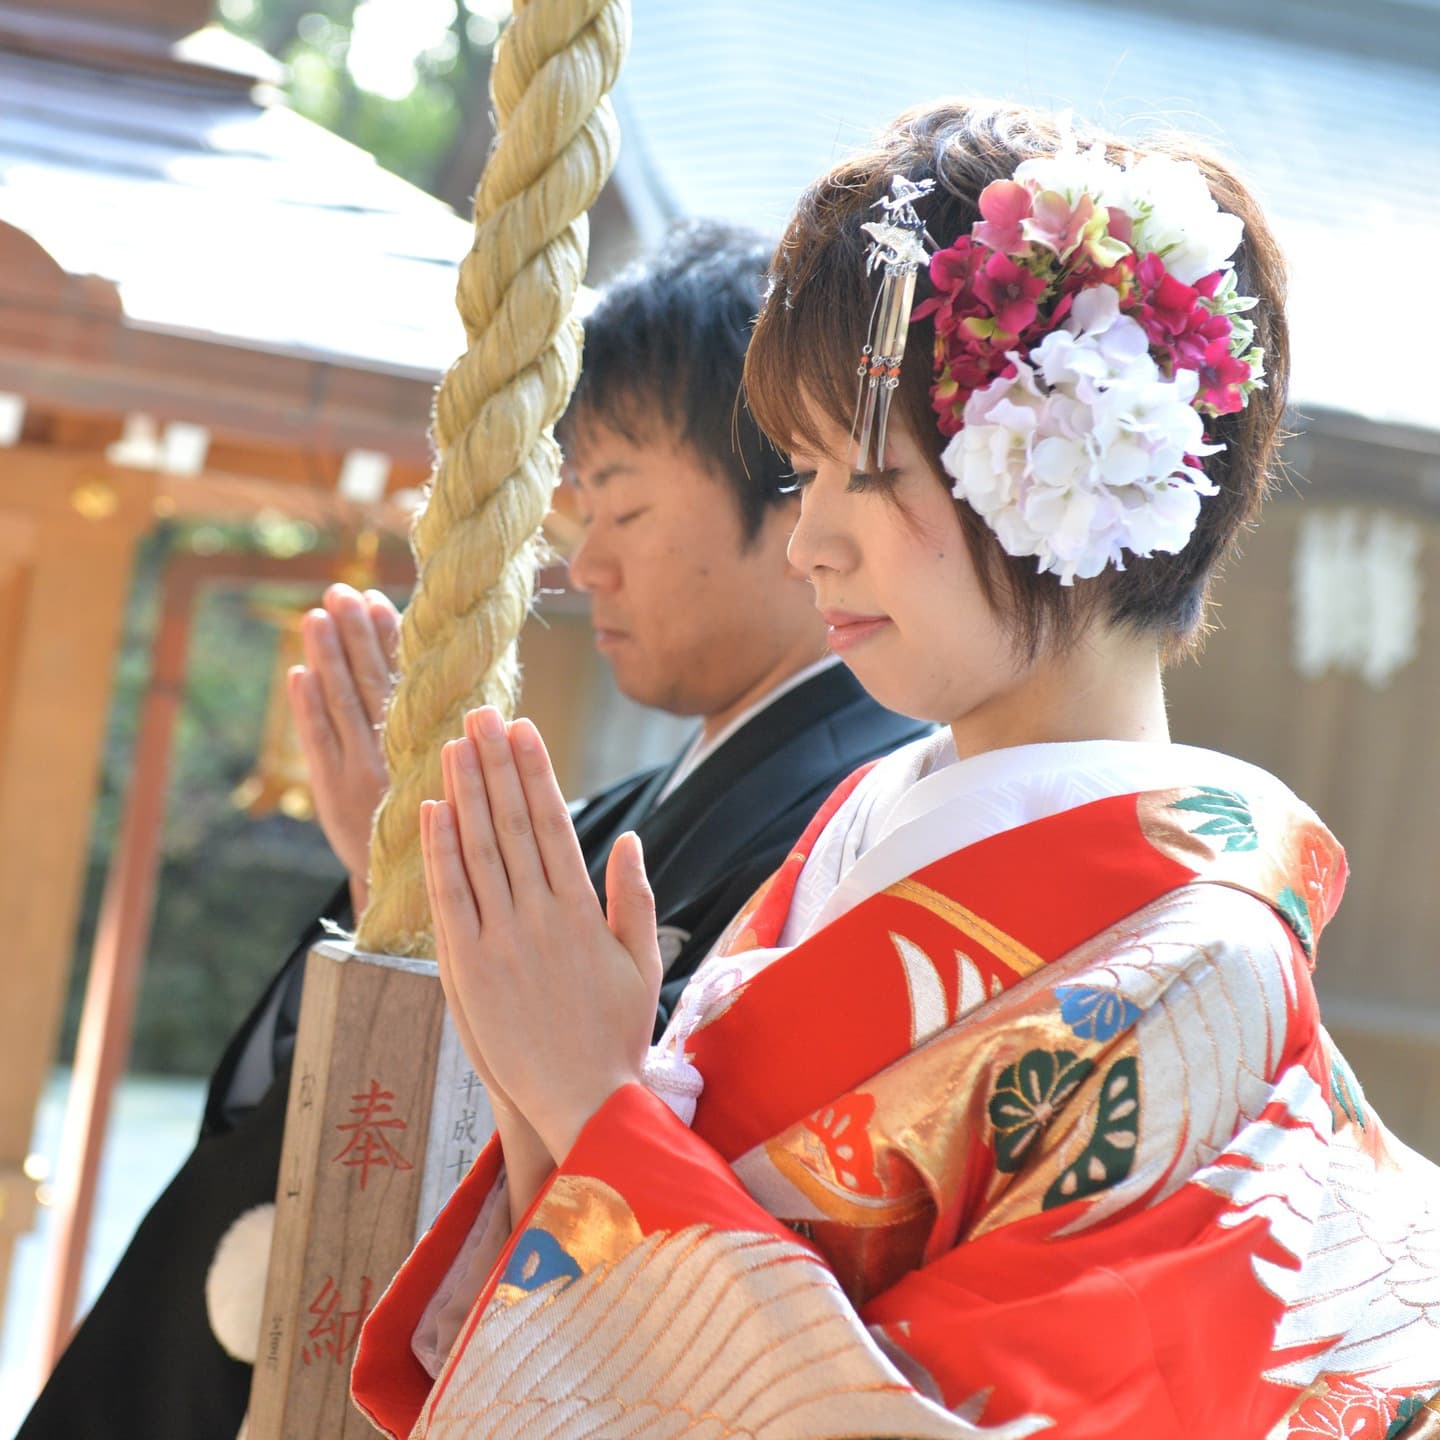 田村神社で結婚式の新郎と綿帽子の花嫁